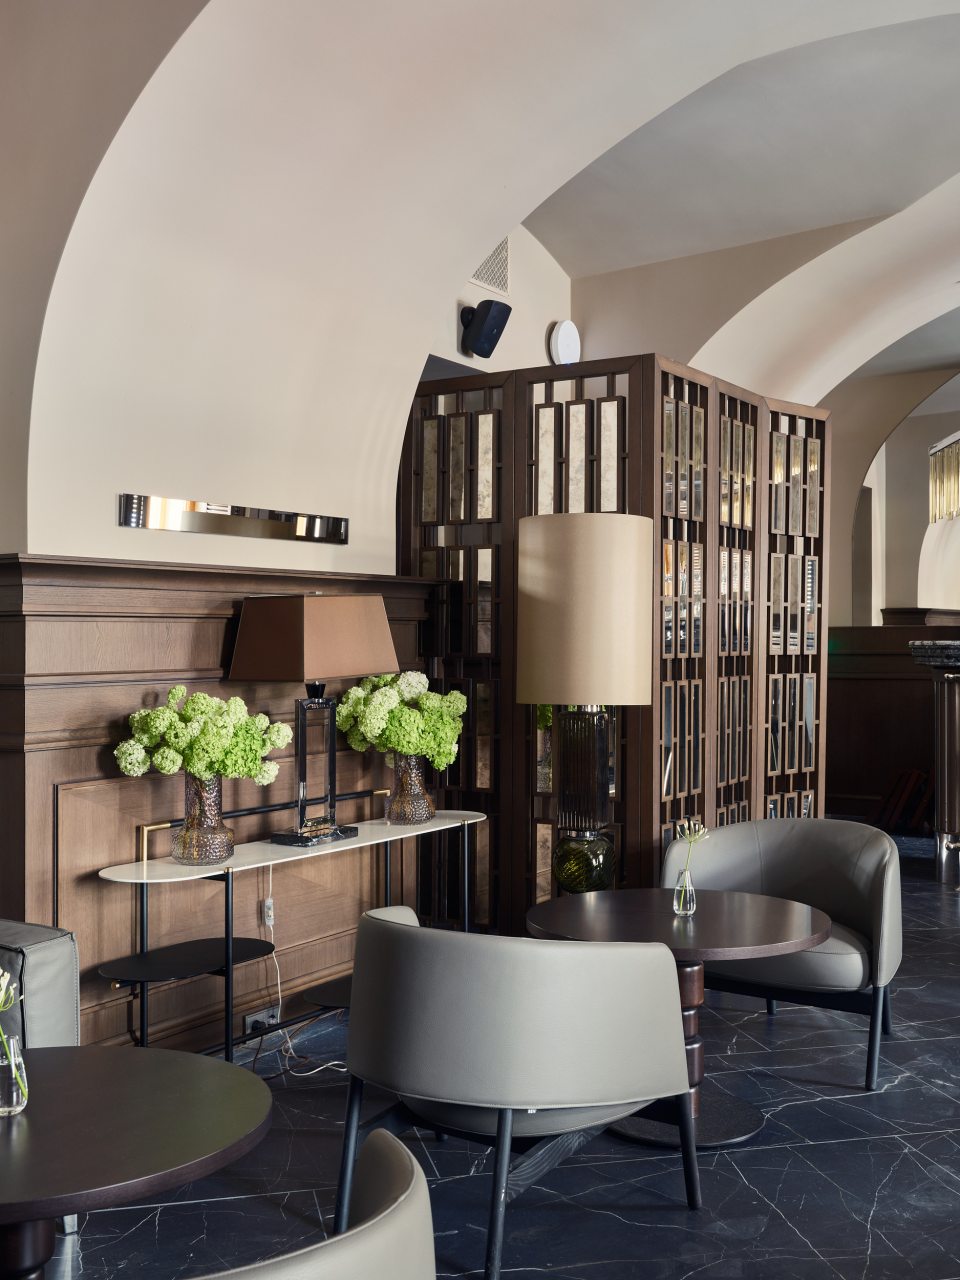 Отель Cosmos Selection Saint-Petersburg Italyanskaya Hotel